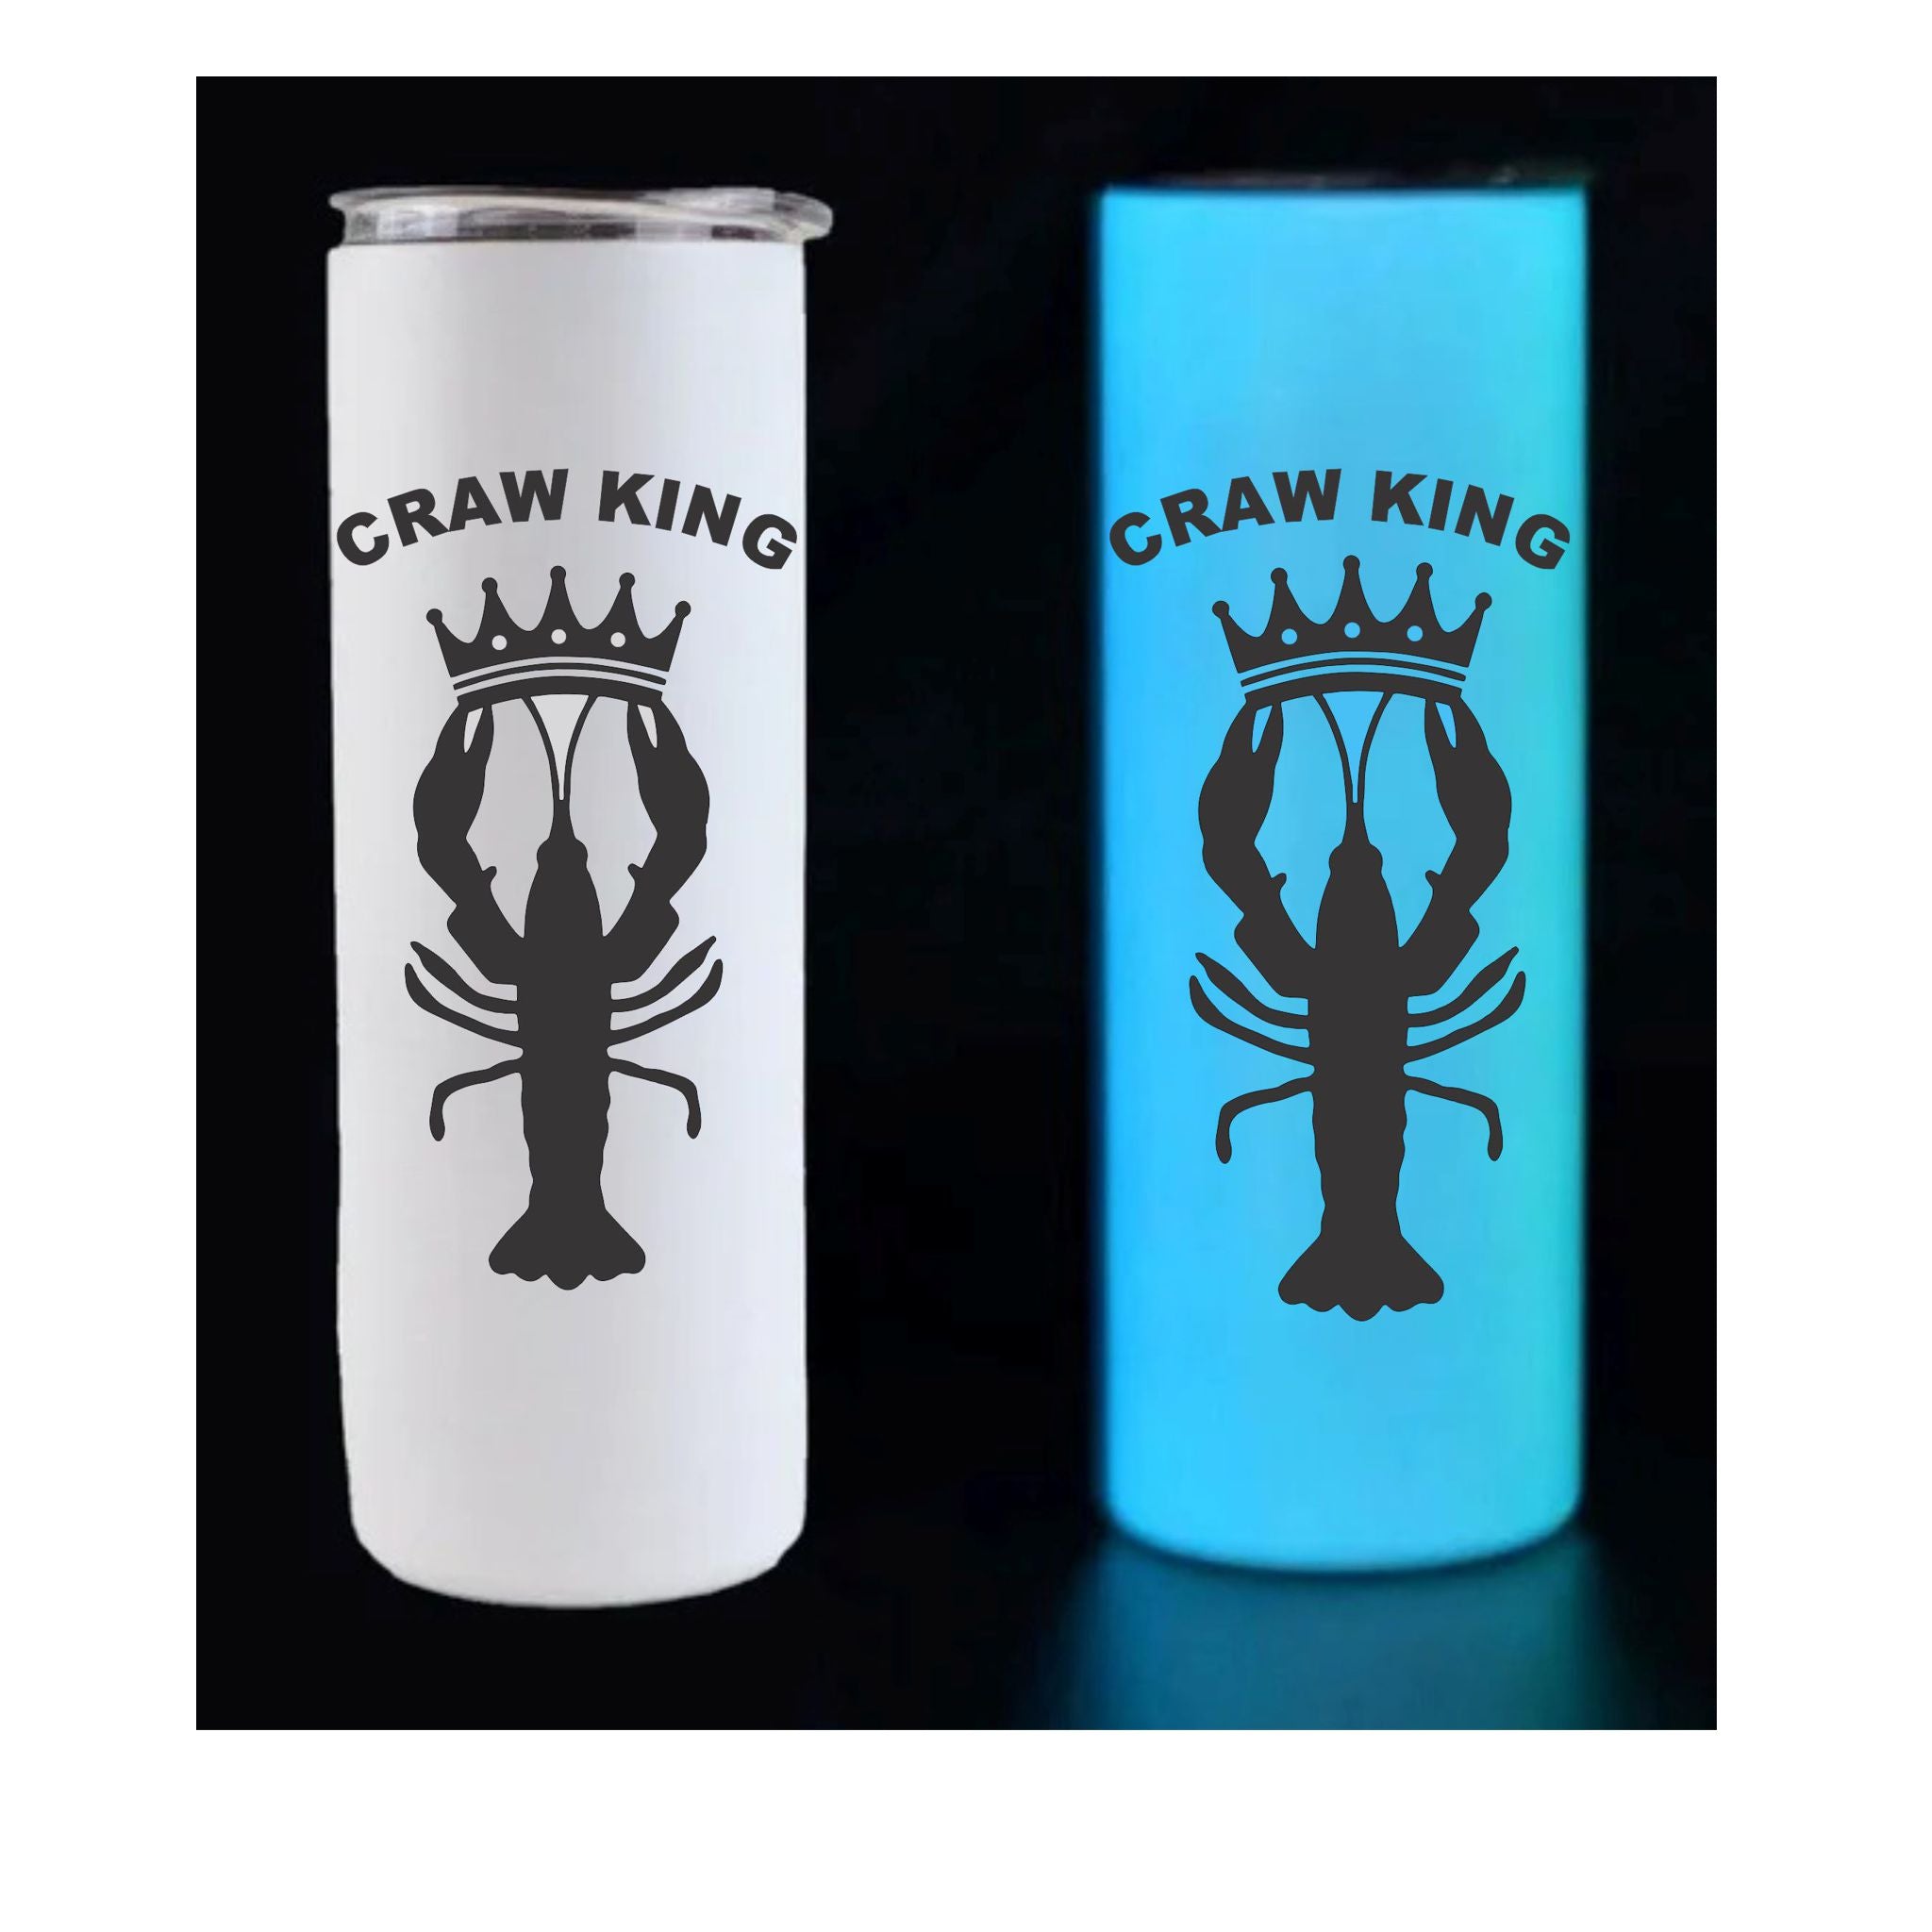 Craw King Glow In The Dark 20oz Mug - Nighttime Favorite